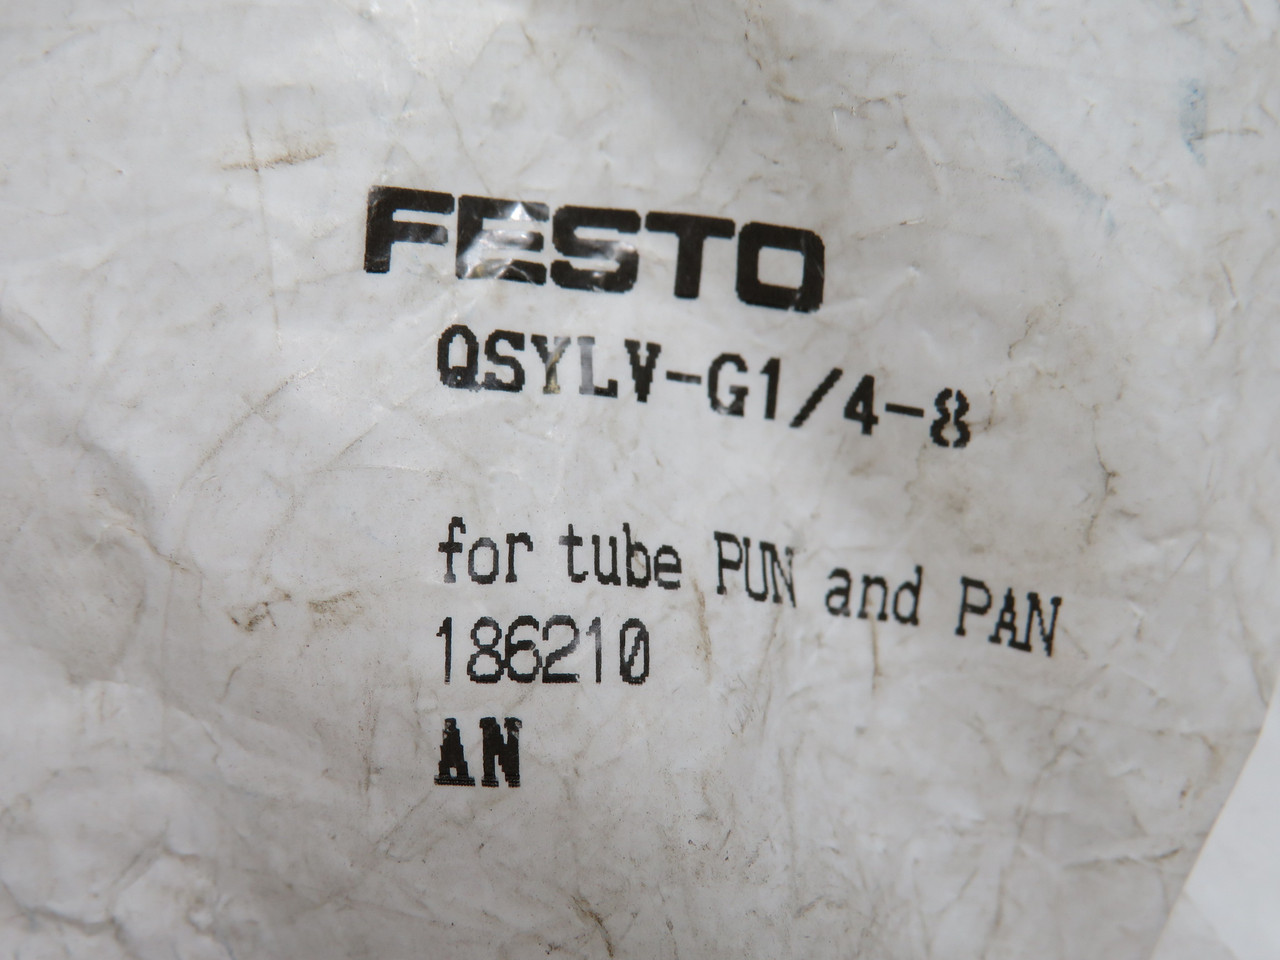 Festo 186210 QSYLV-G1/4-8 Push-In Y-Fitting G1/4" Thread 8mm Tubing OD ! NWB !